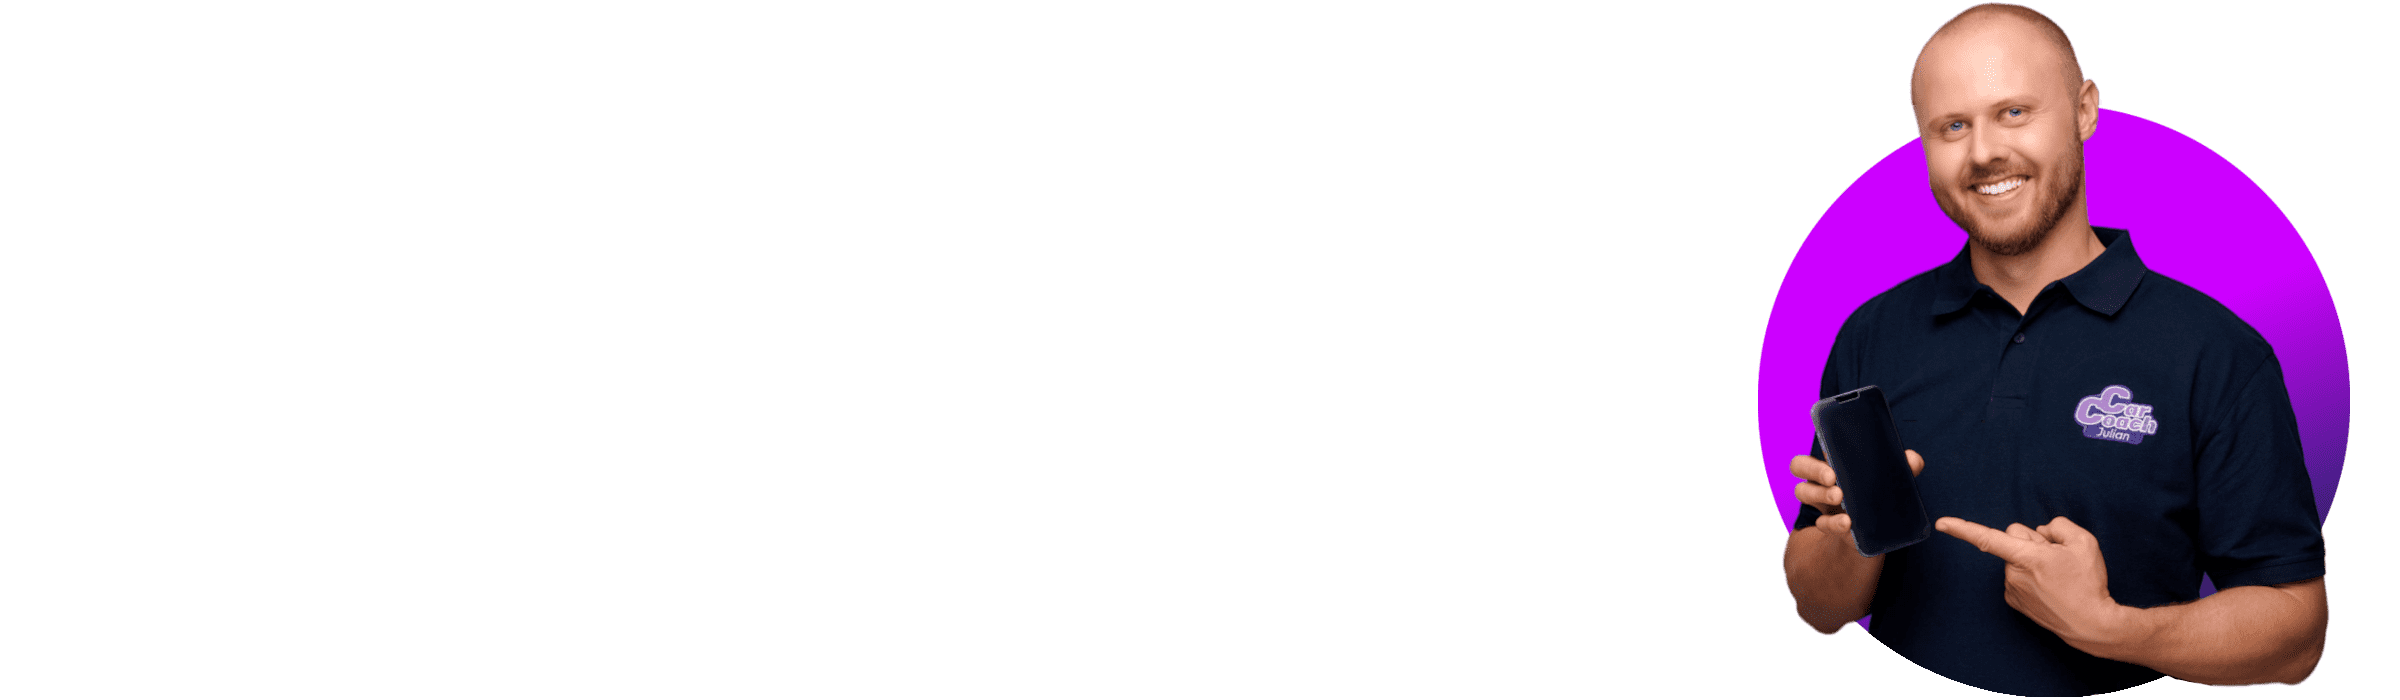 CarCoach-Fazit - Julian